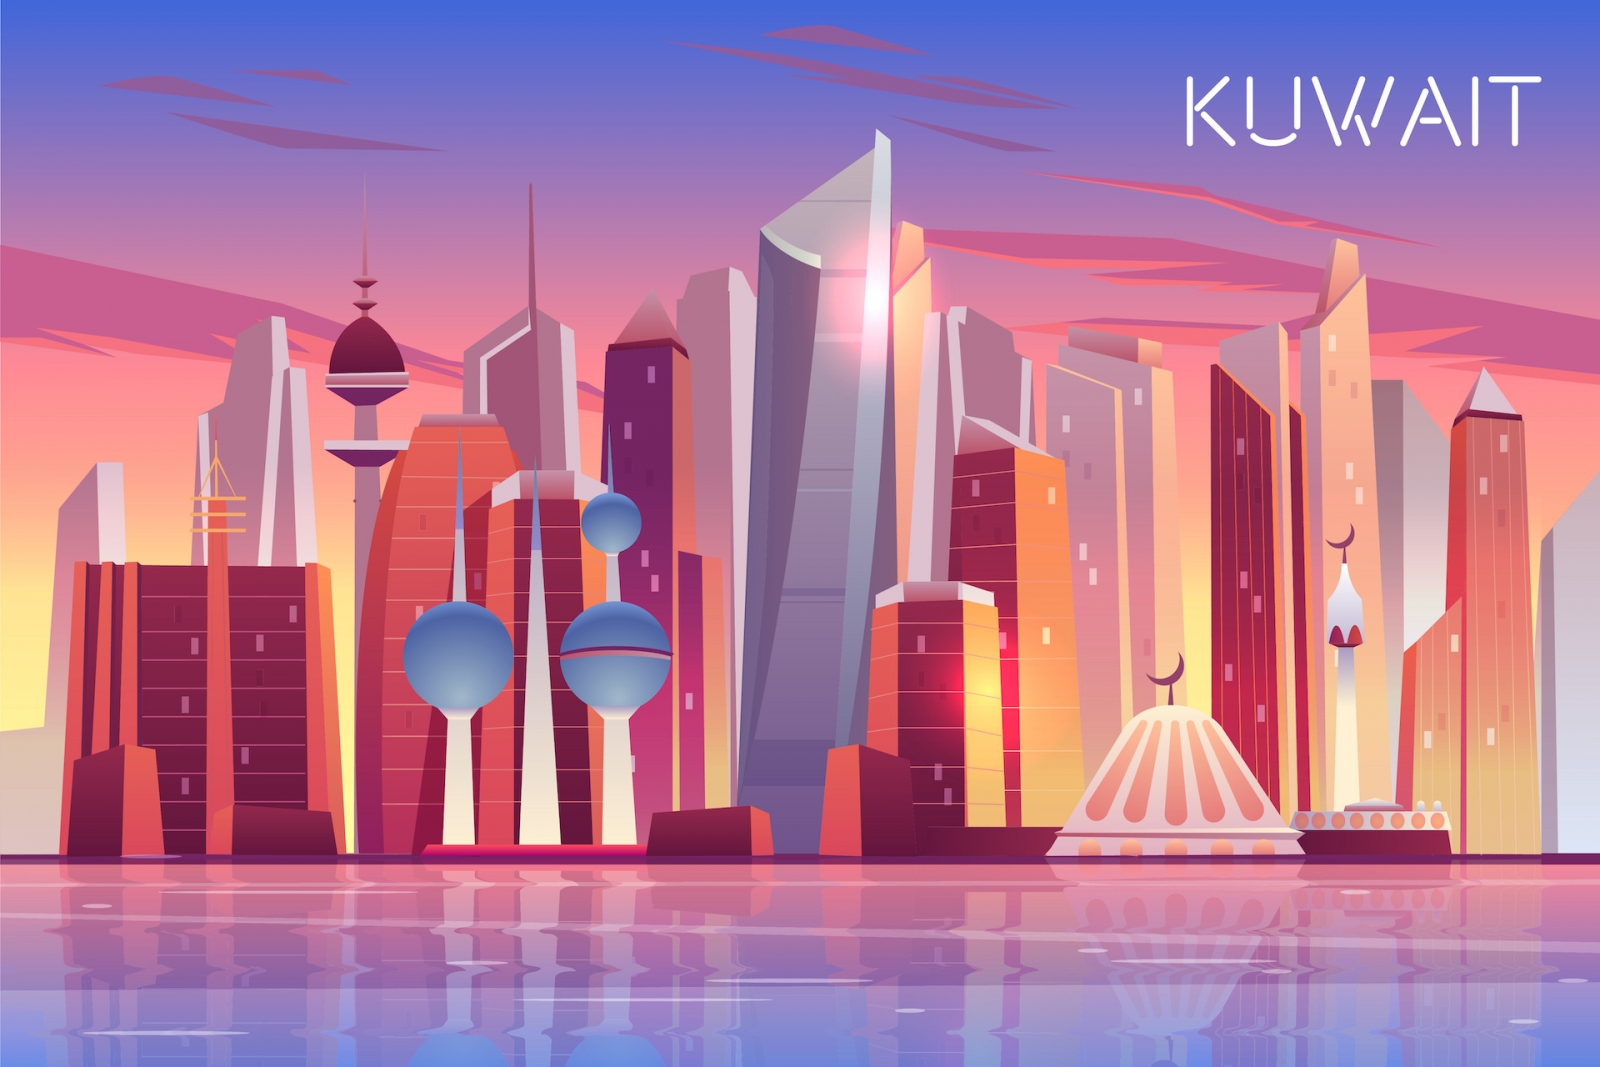 Skyline von Kuwait.  Moderner arabischer Staatspanoramahintergrund mit Wolkenkratzern und Türmen steht in der Bucht des Persischen Golfs